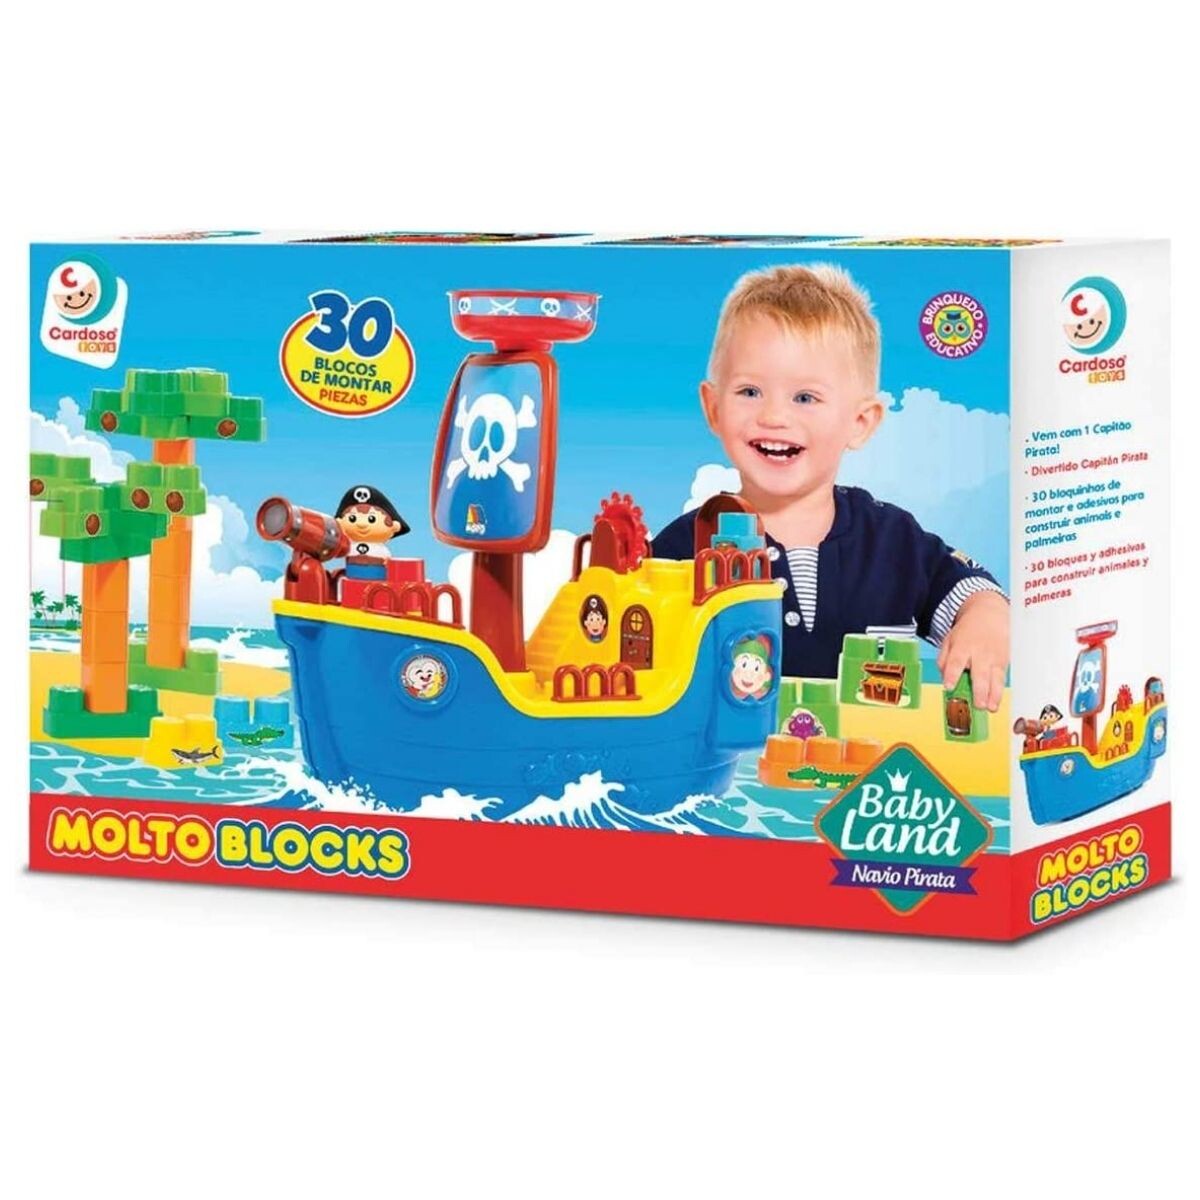 Barco con Bloques Molto Block Cardozo Toys 30 Piezas 